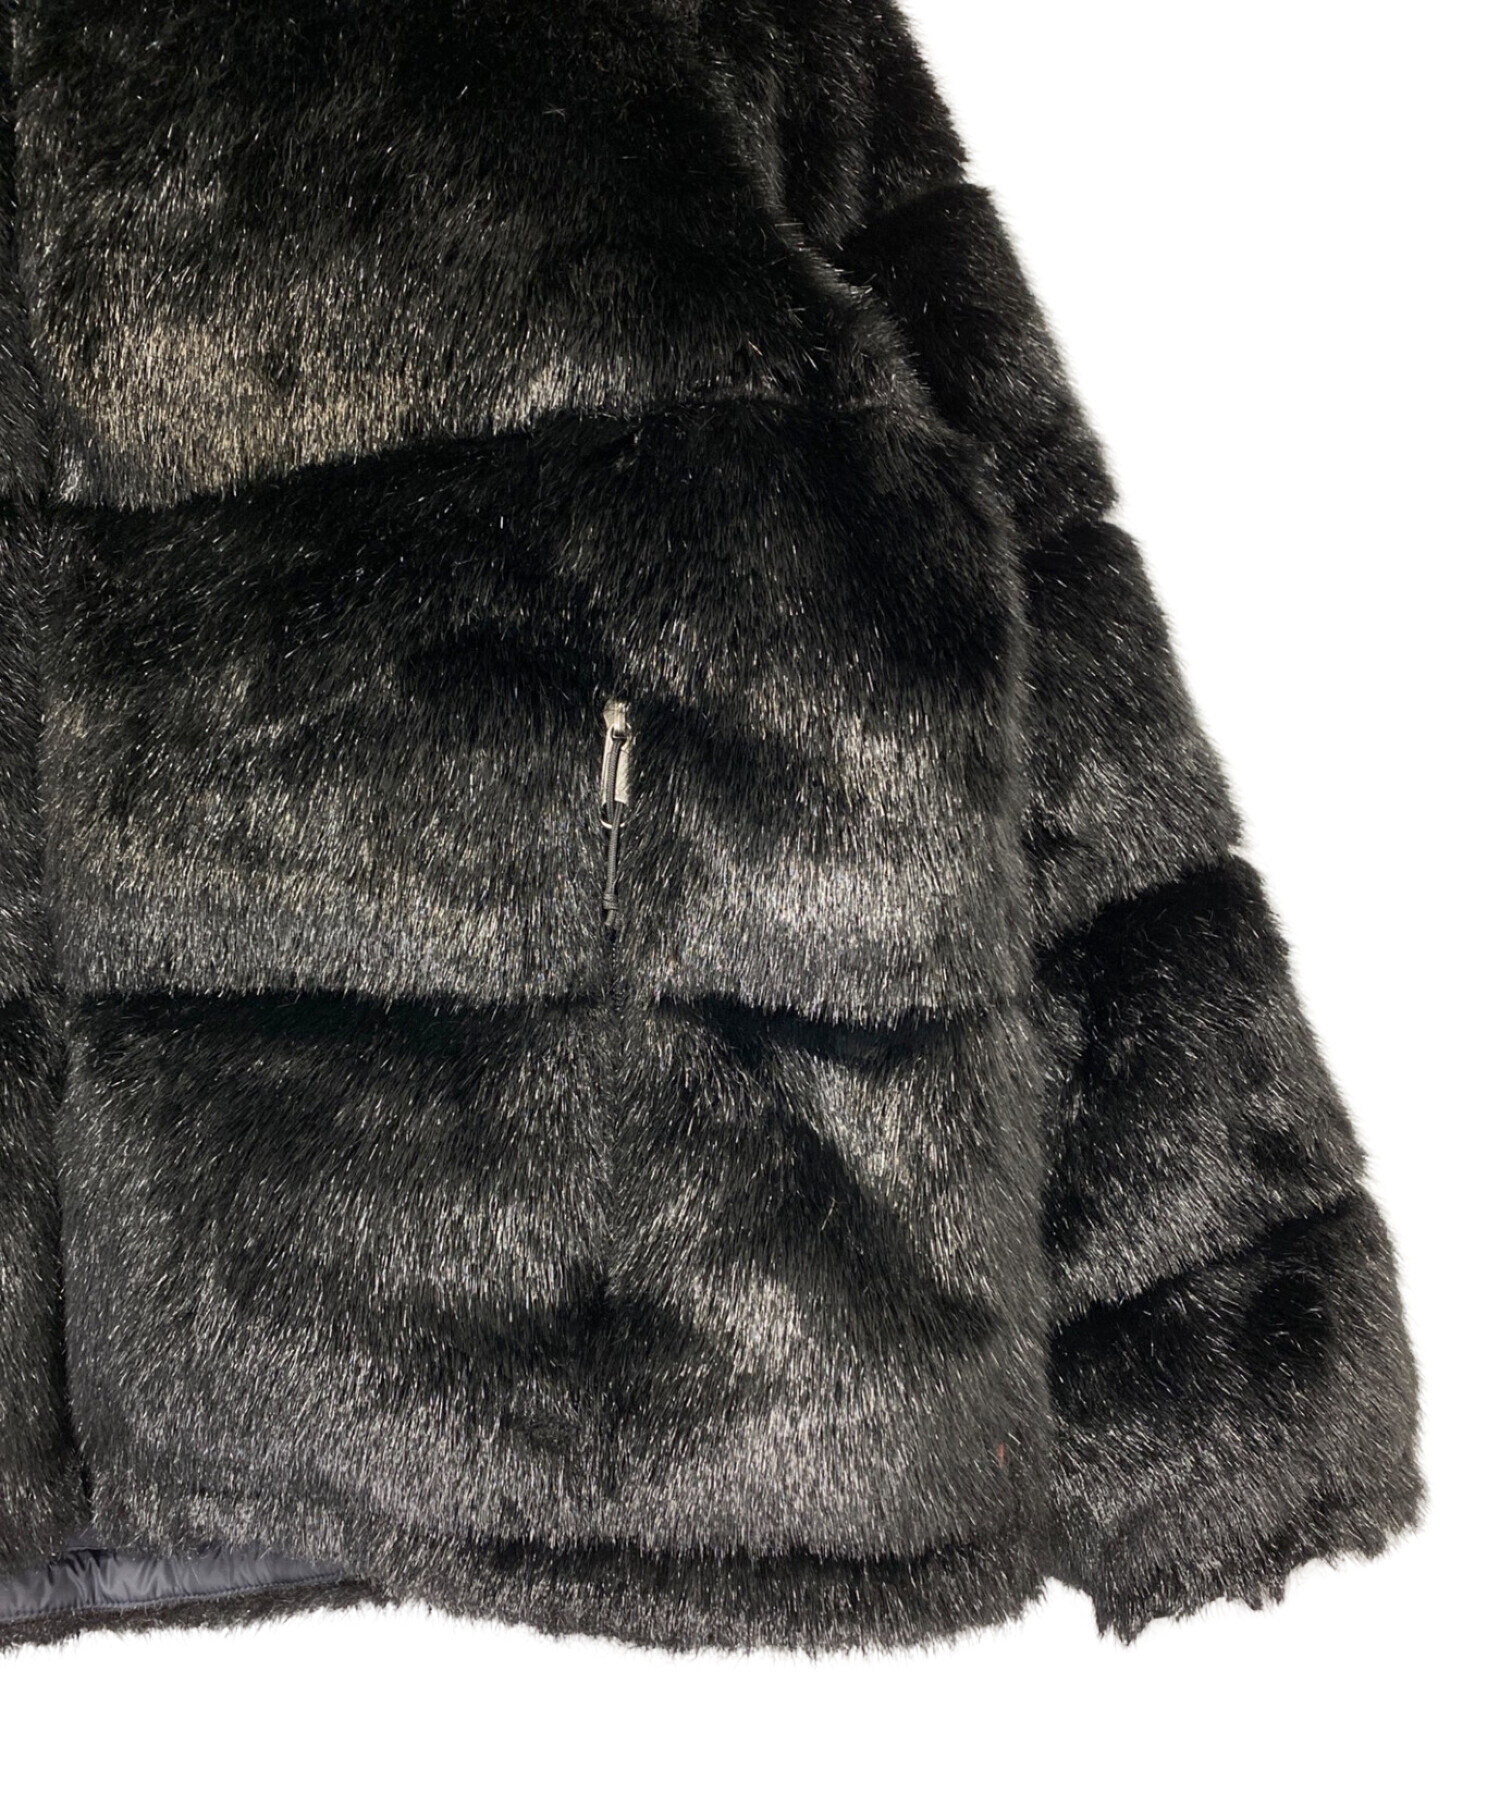 SUPREME (シュプリーム) THE NORTH FACE (ザ ノース フェイス) Faux Fur Nuptse Jacket ブラック  サイズ:L